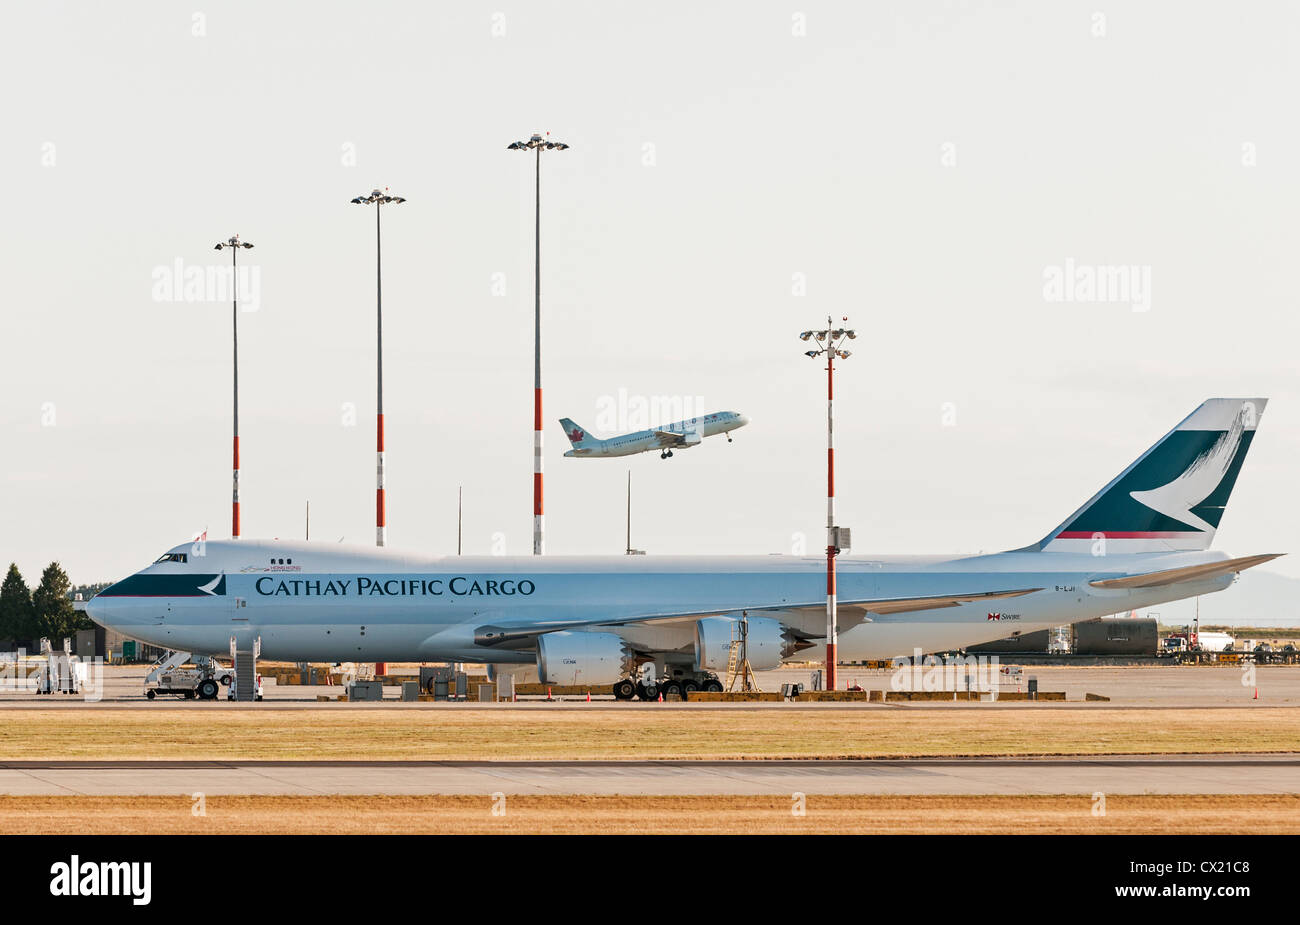 Un Cathay Pacific cargo Boeing 747-8F air cargo freighter garé sur le tarmac de l'Aéroport International de Vancouver, Canada. Banque D'Images